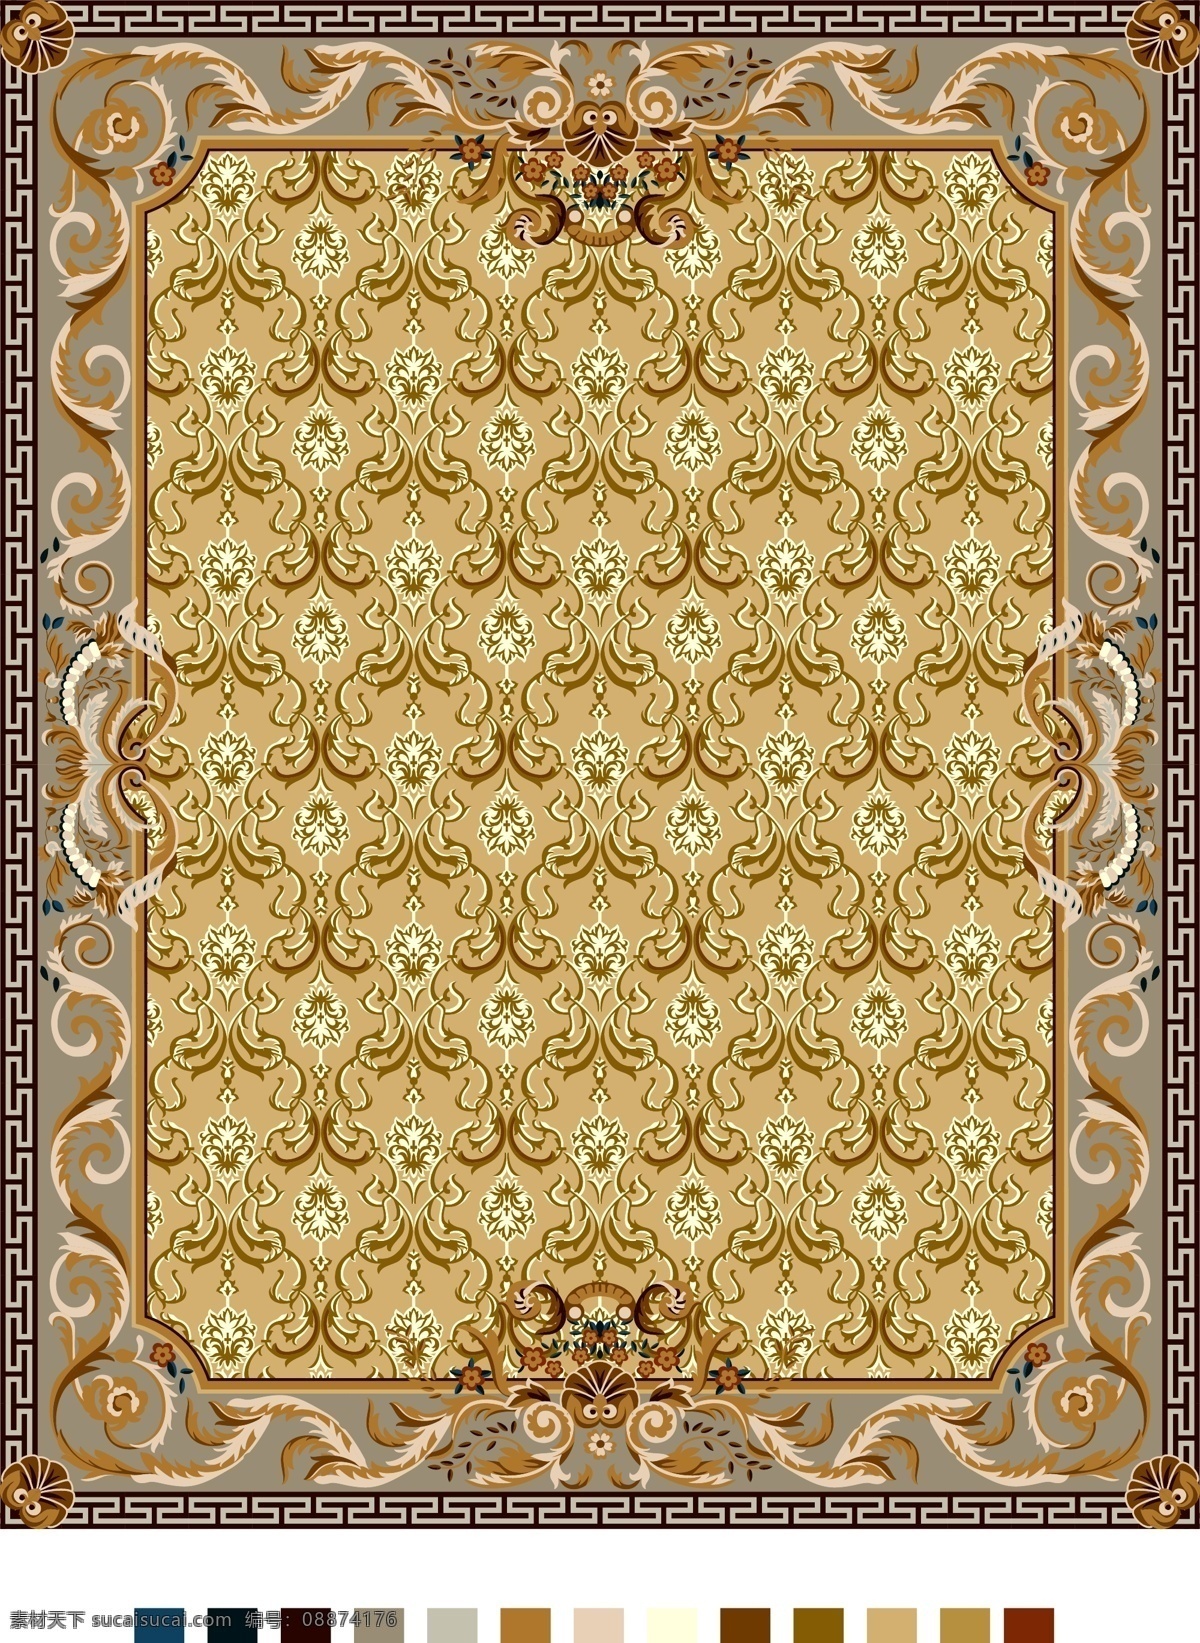 地毯图案 地毯设计 地毯拼花 外国图案 外国传统图案 欧式图案 传统地毯 底纹 边花 花纹花边 底纹边框 矢量